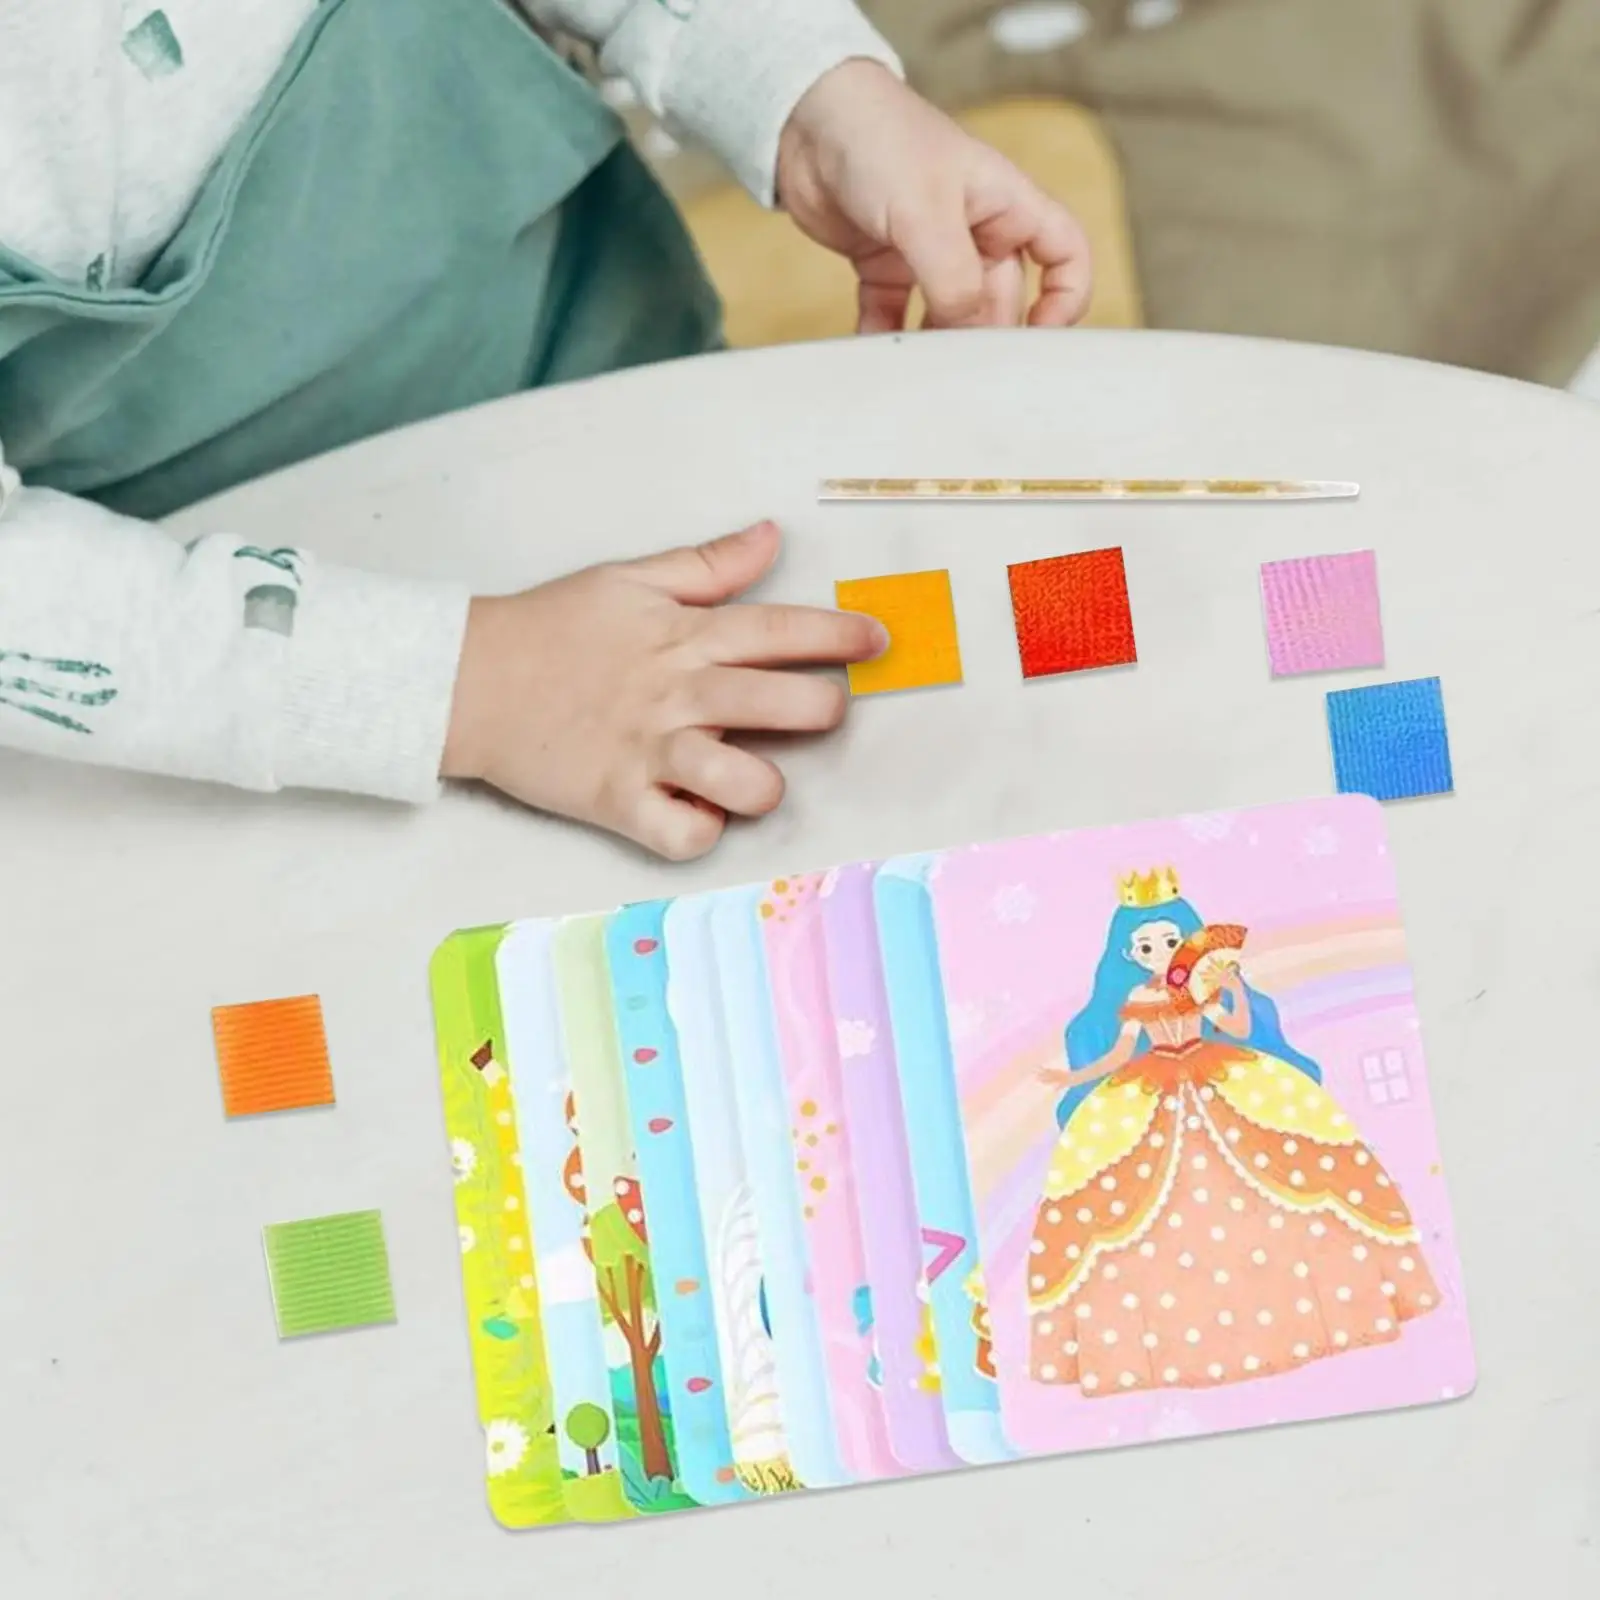 Принцесса наряжает поделки Забавный детский проект Poke Art DIY Toys